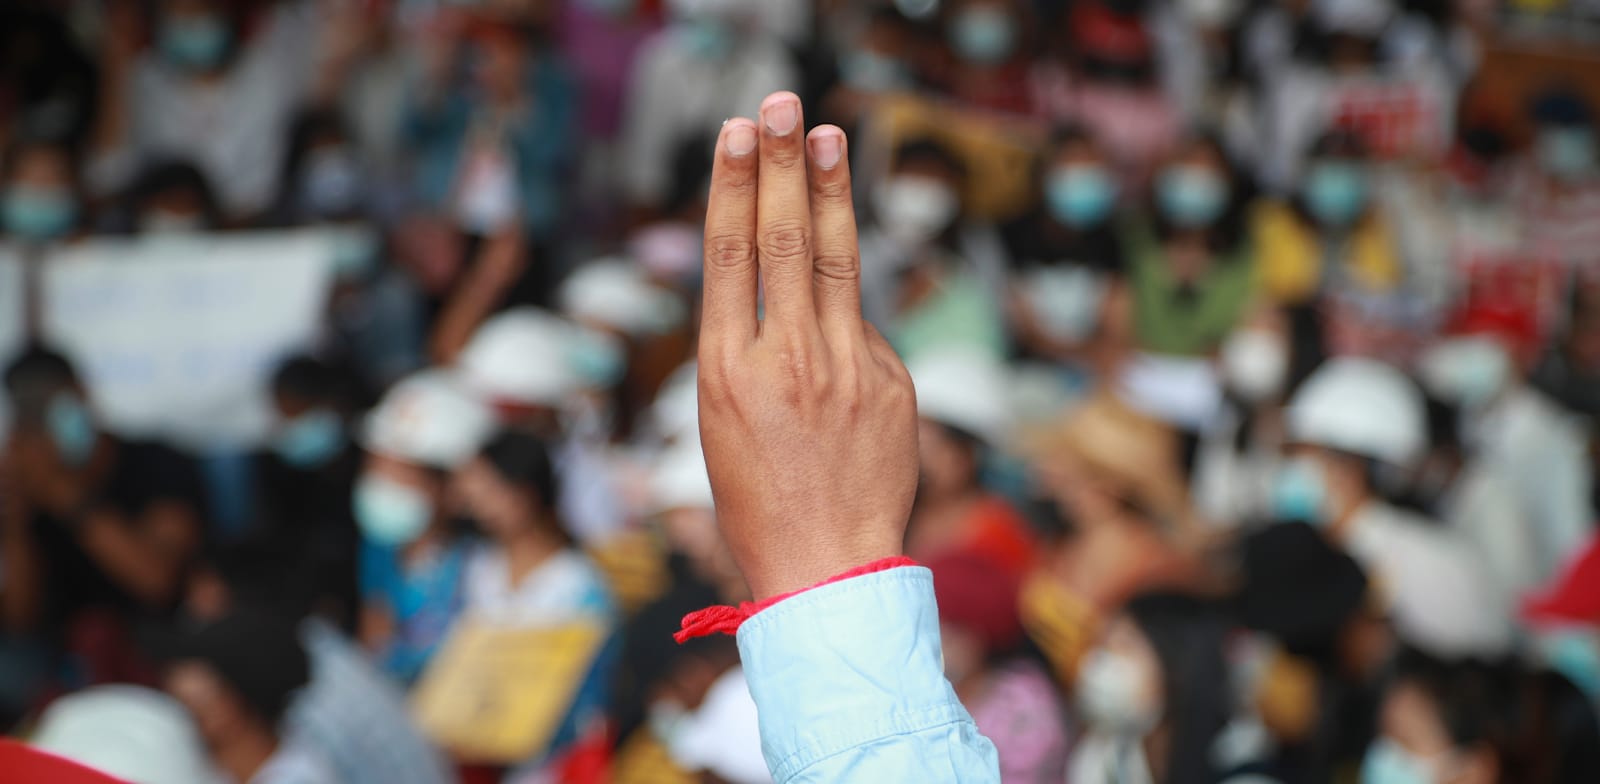 מפגינים באסיה מצדיעים עם שלוש אצבעות כמו ב"משחקי הרעב" / צילום: Associated Press